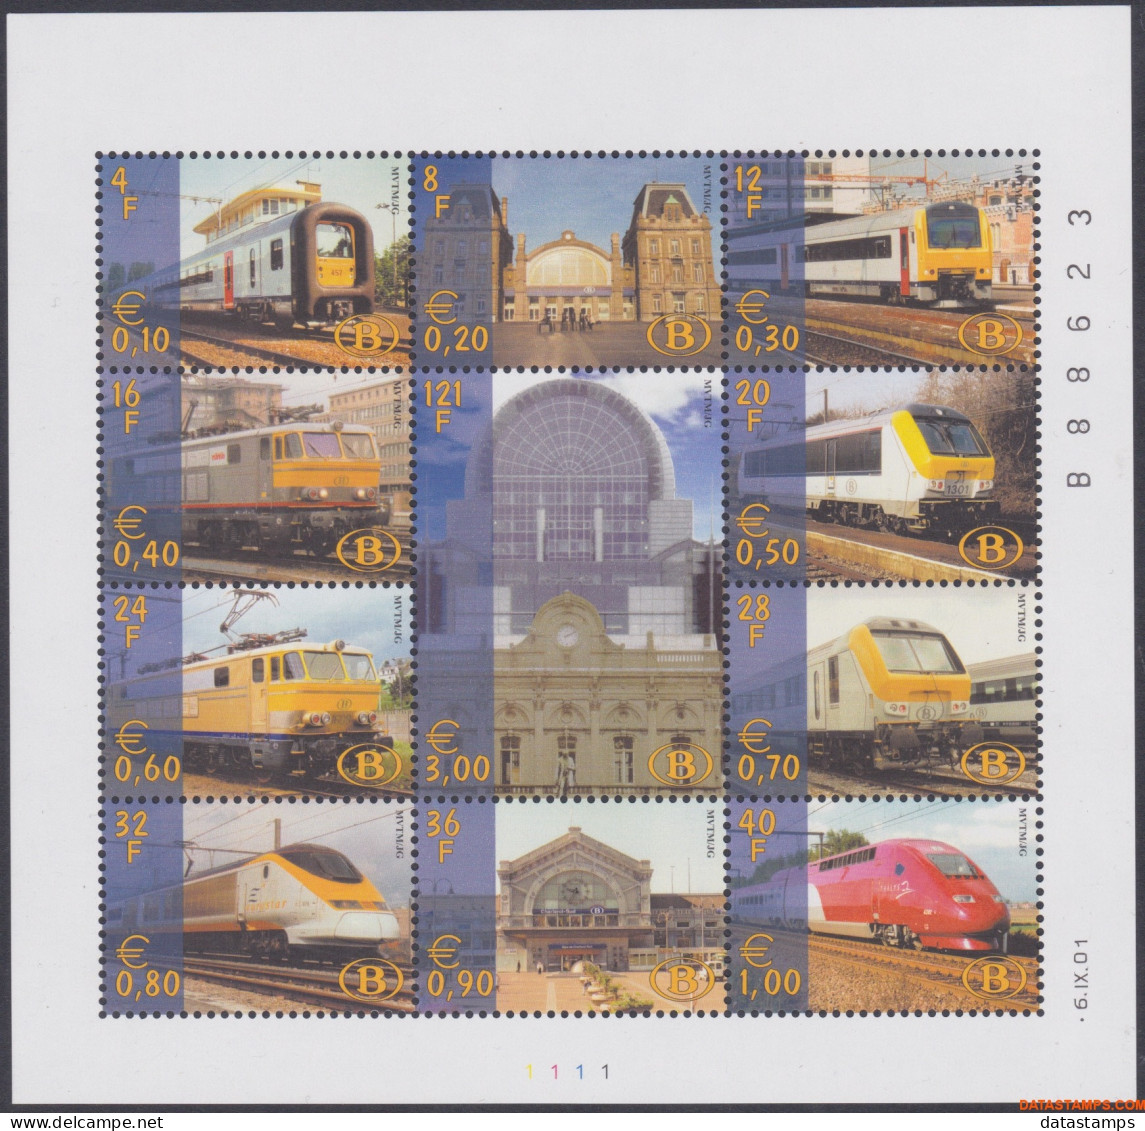 België 2001 - OBP:TRV BL 3, Railway Vignettes - XX - Modern Railroad - 1996-2013 Labels [TRV]